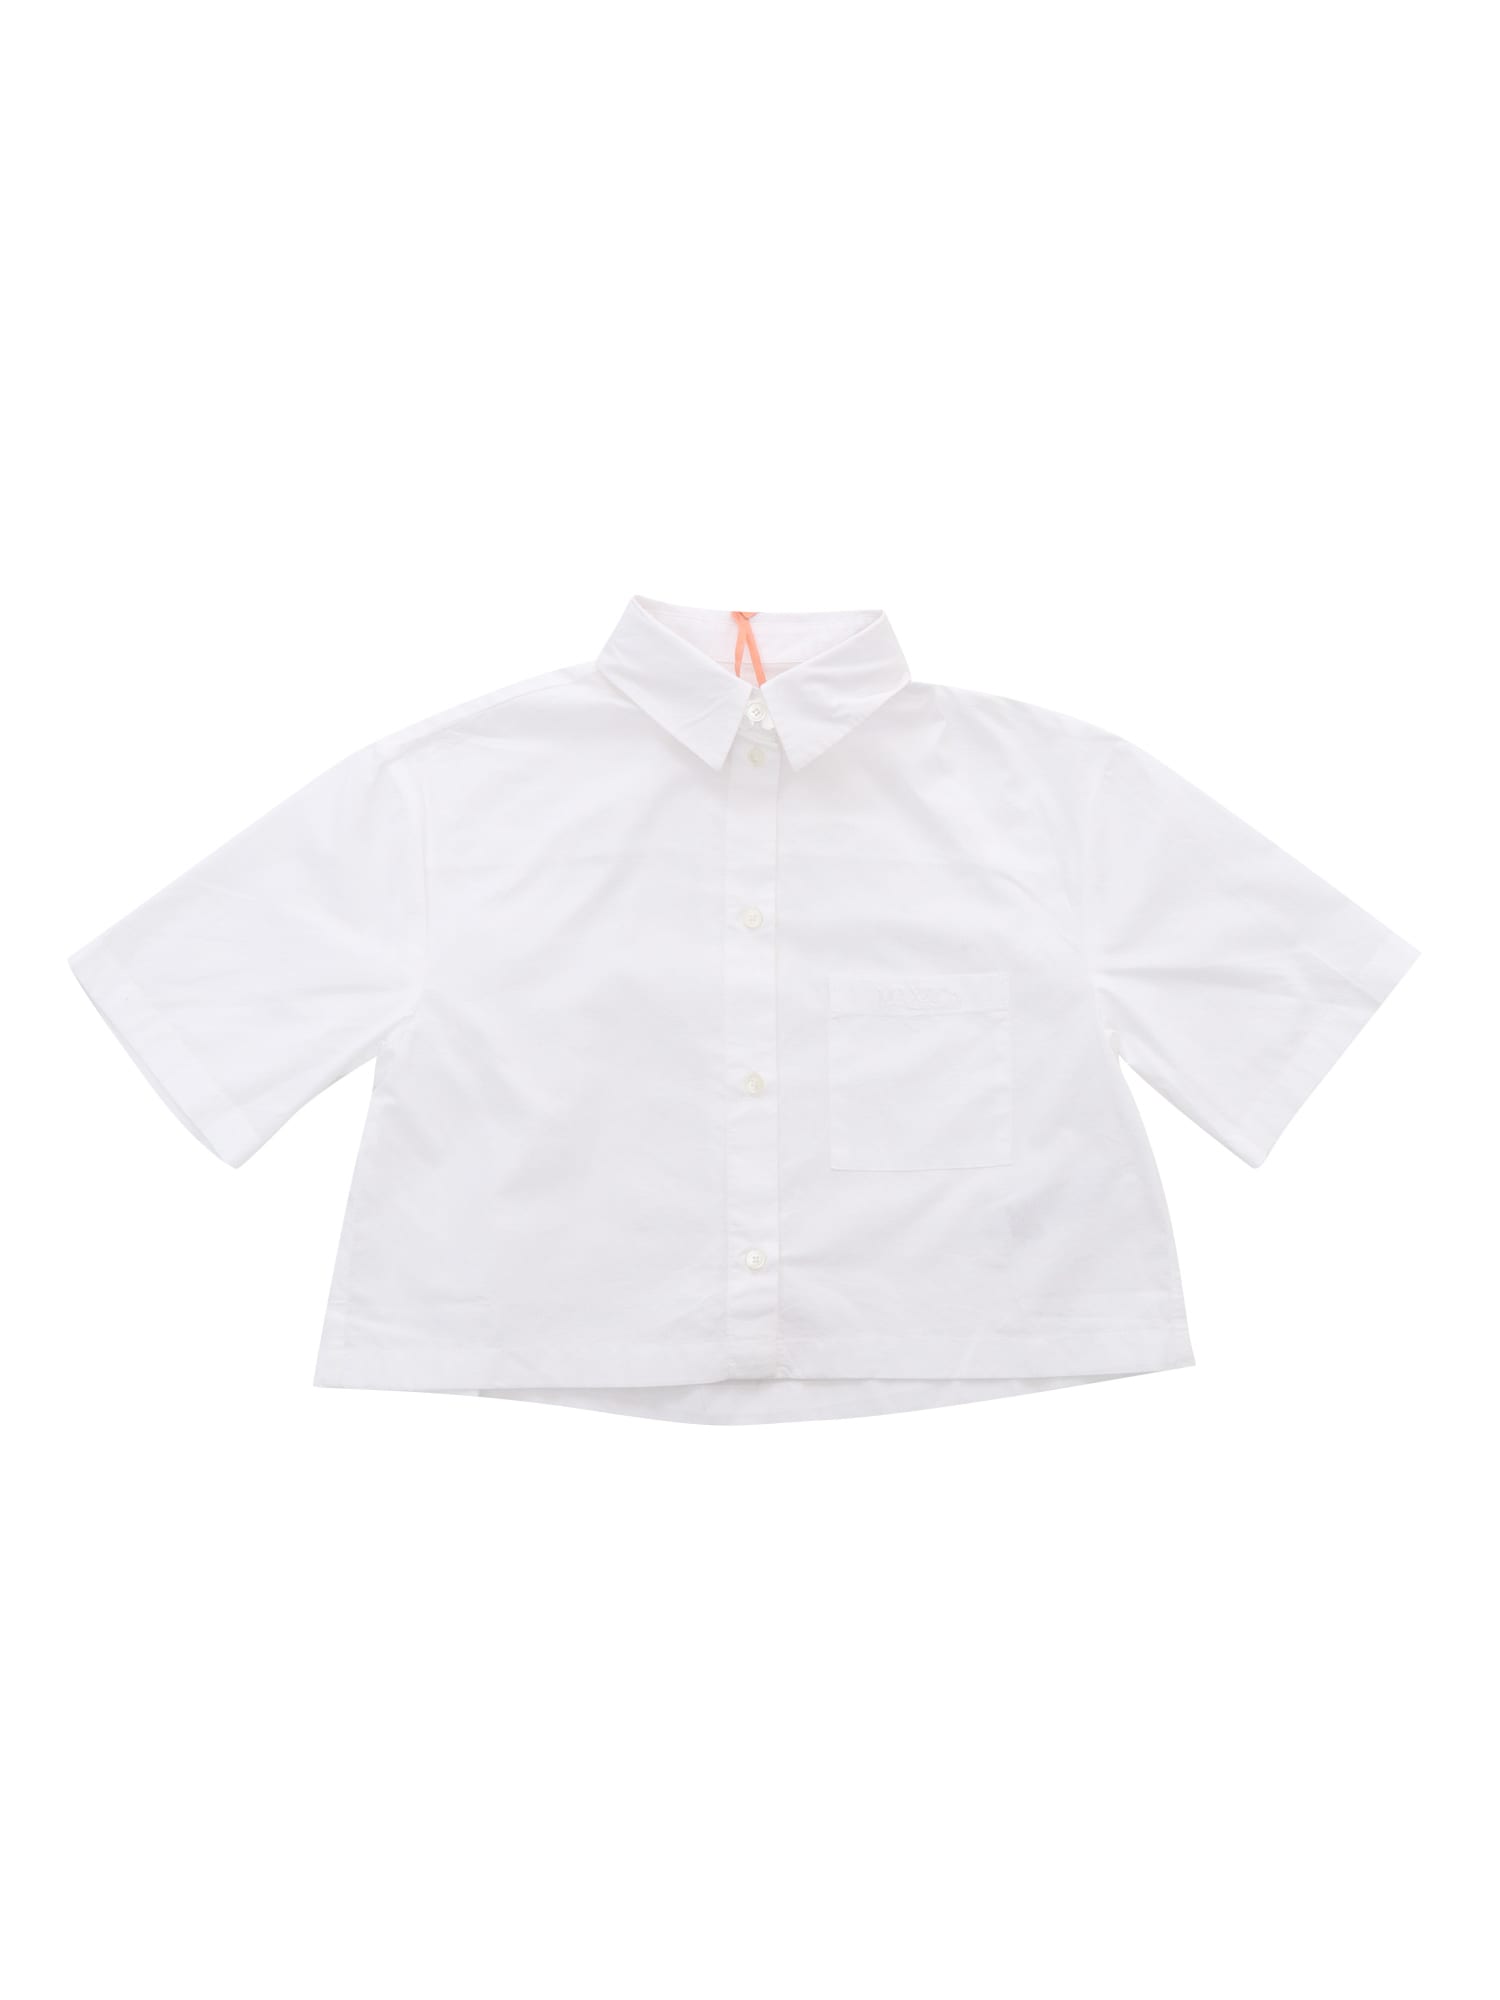 Max&amp;co. Kids' White Shirt